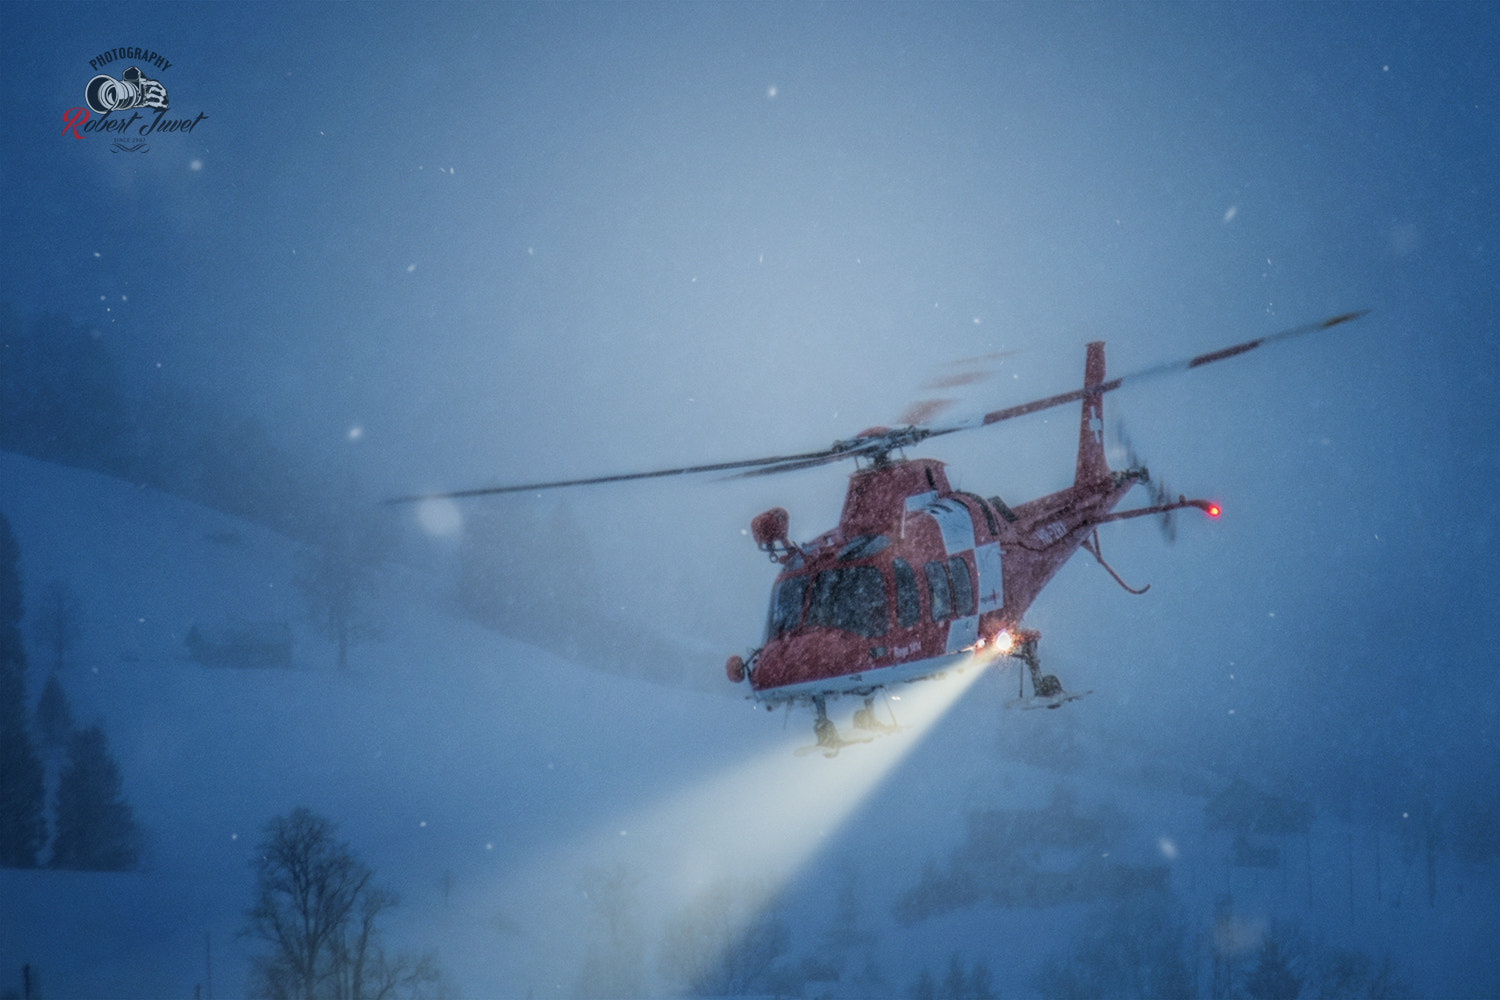 Nikon D810 sample photo. Helikopter der rettungsorganisation rega im einsatz bei wind und wetter photography